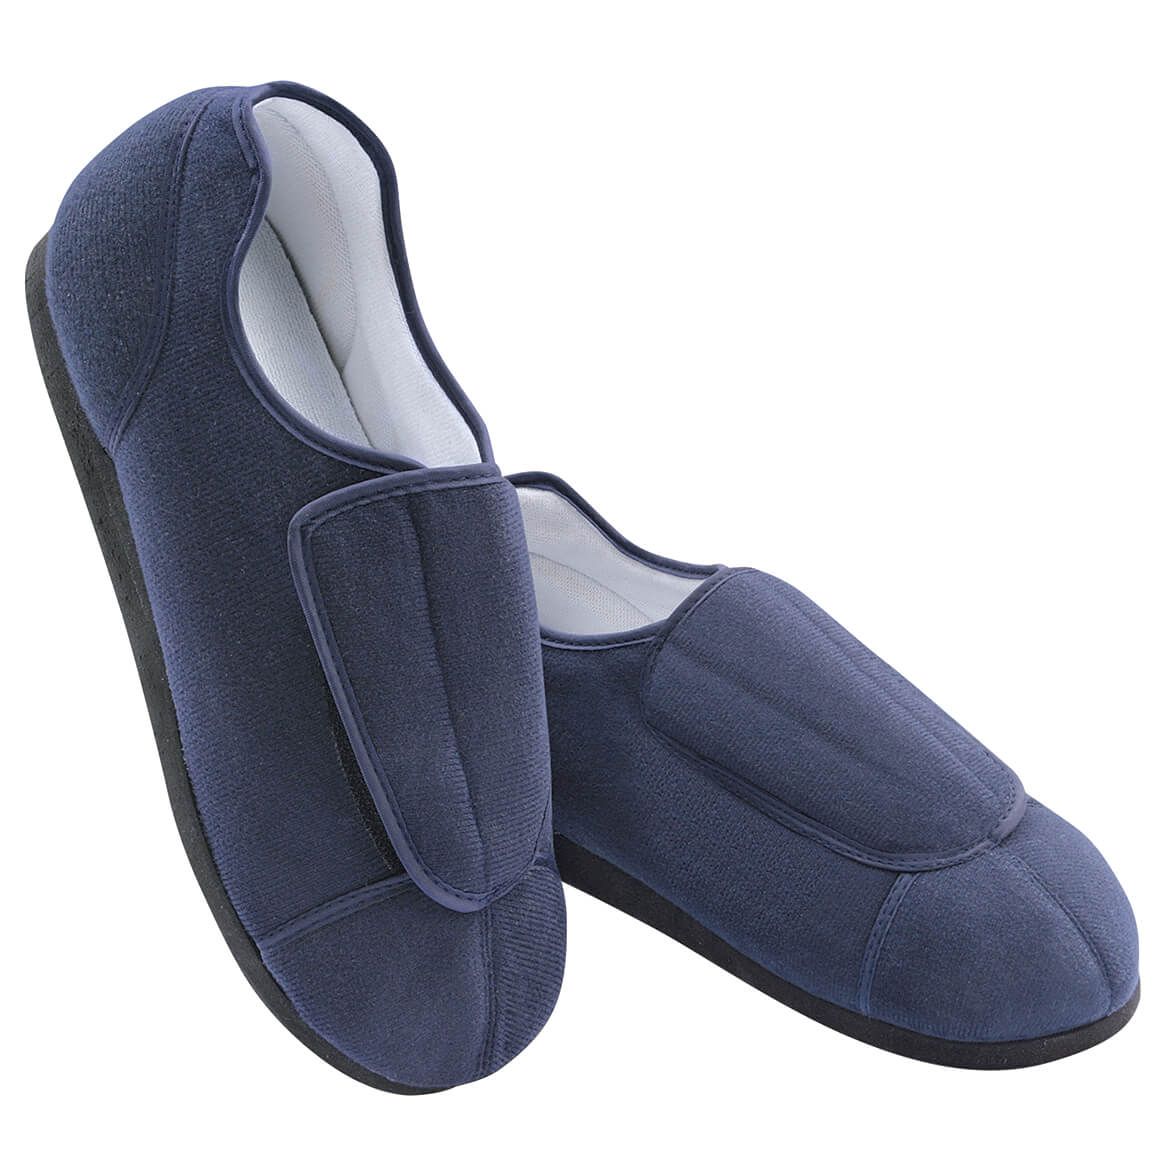 Adjustable Health Slippers Ladies + '-' + 369894